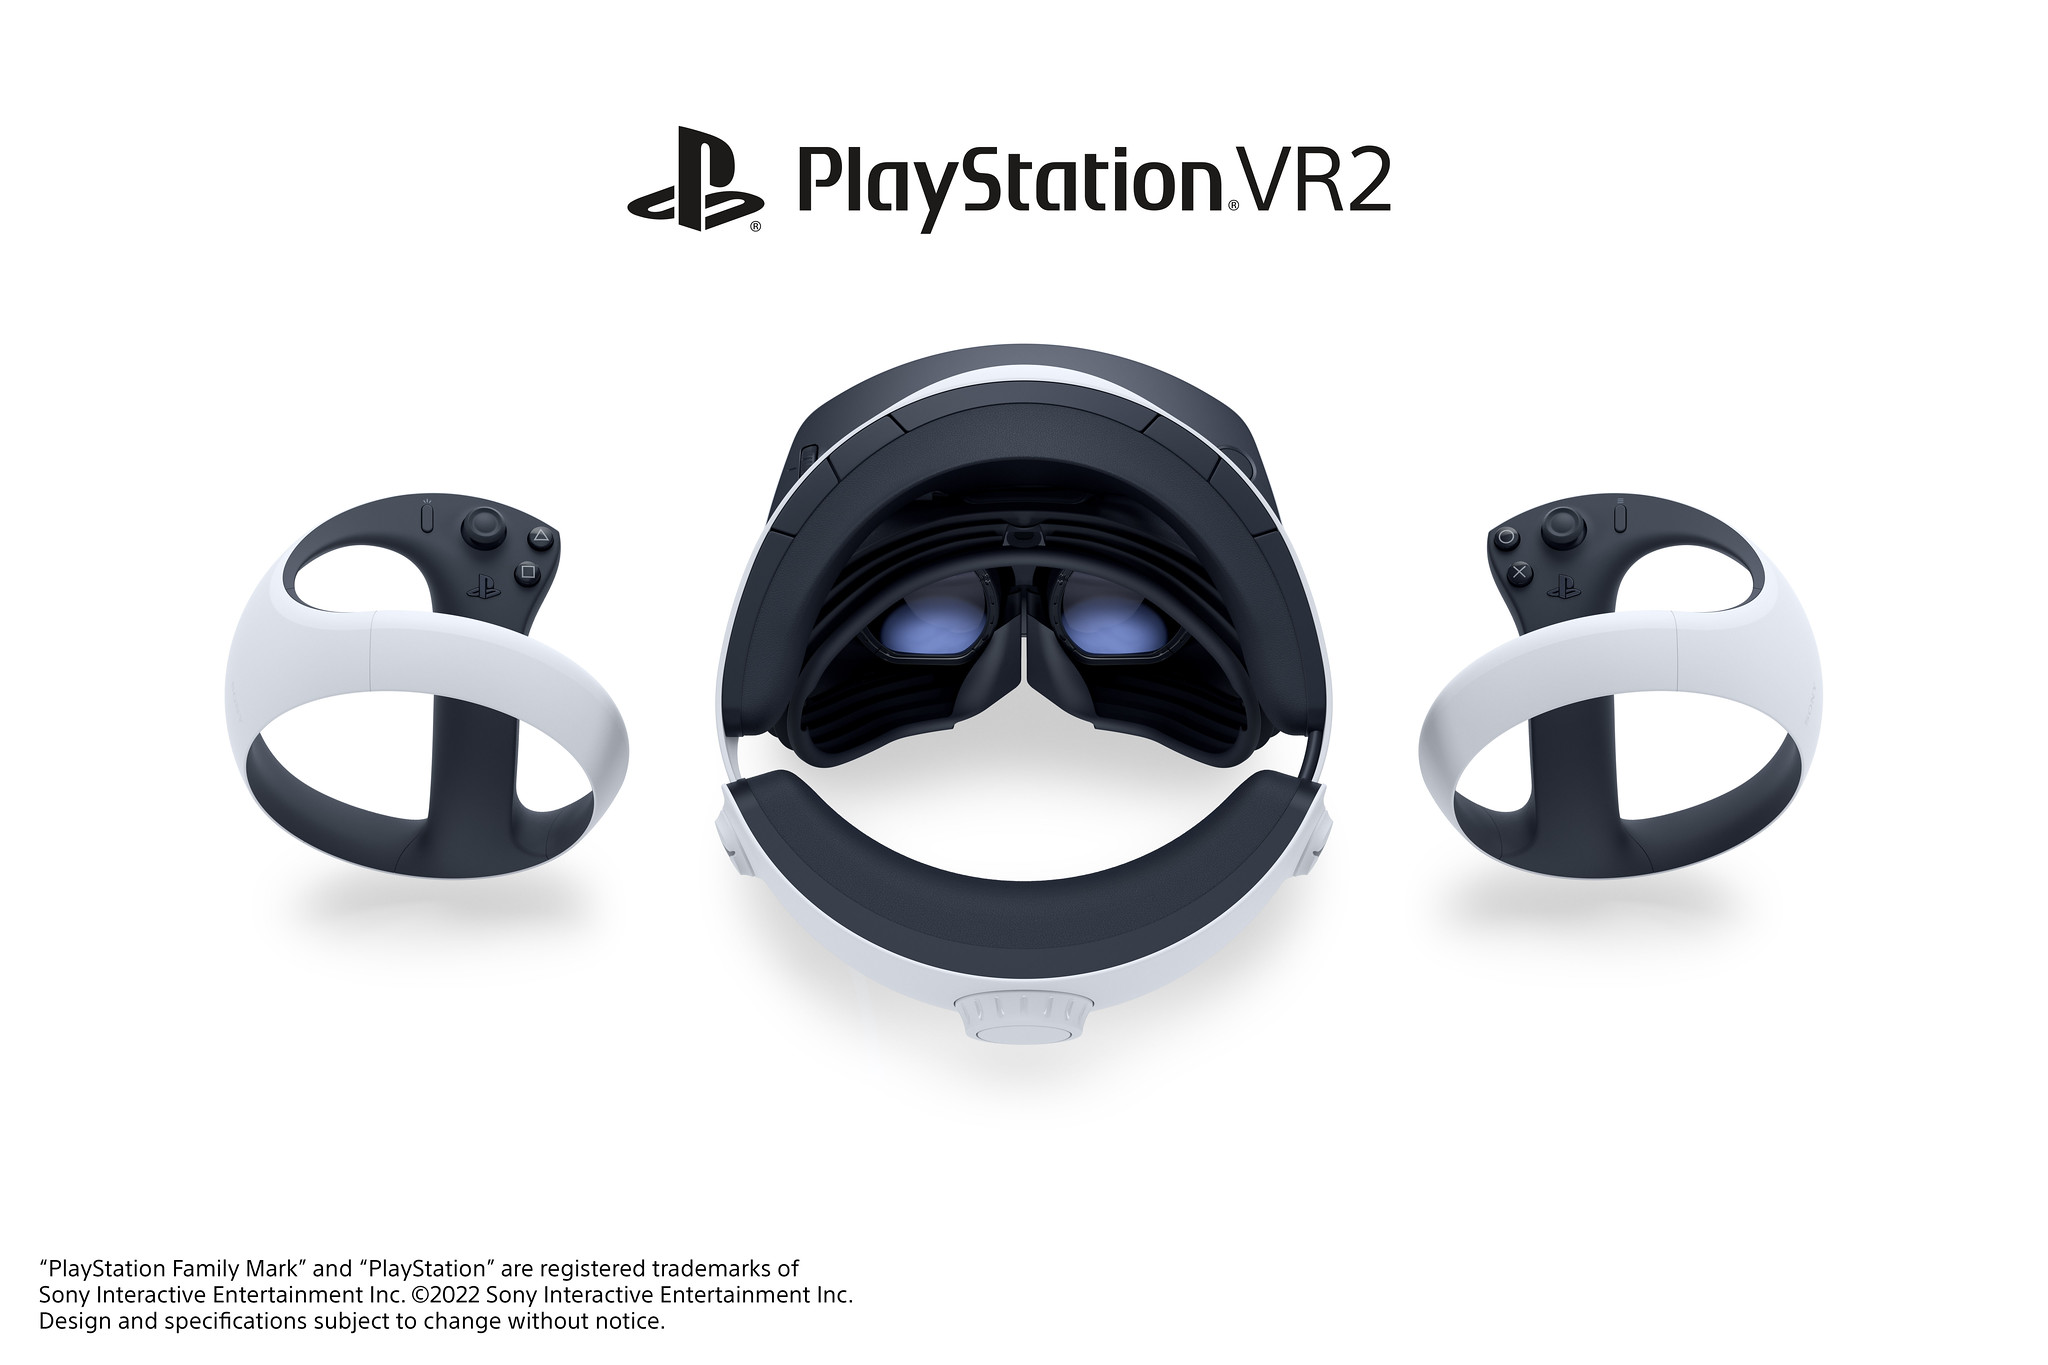 51897391199 64d60b890e k - Erster Blick: Headset-Design für PlayStation VR2